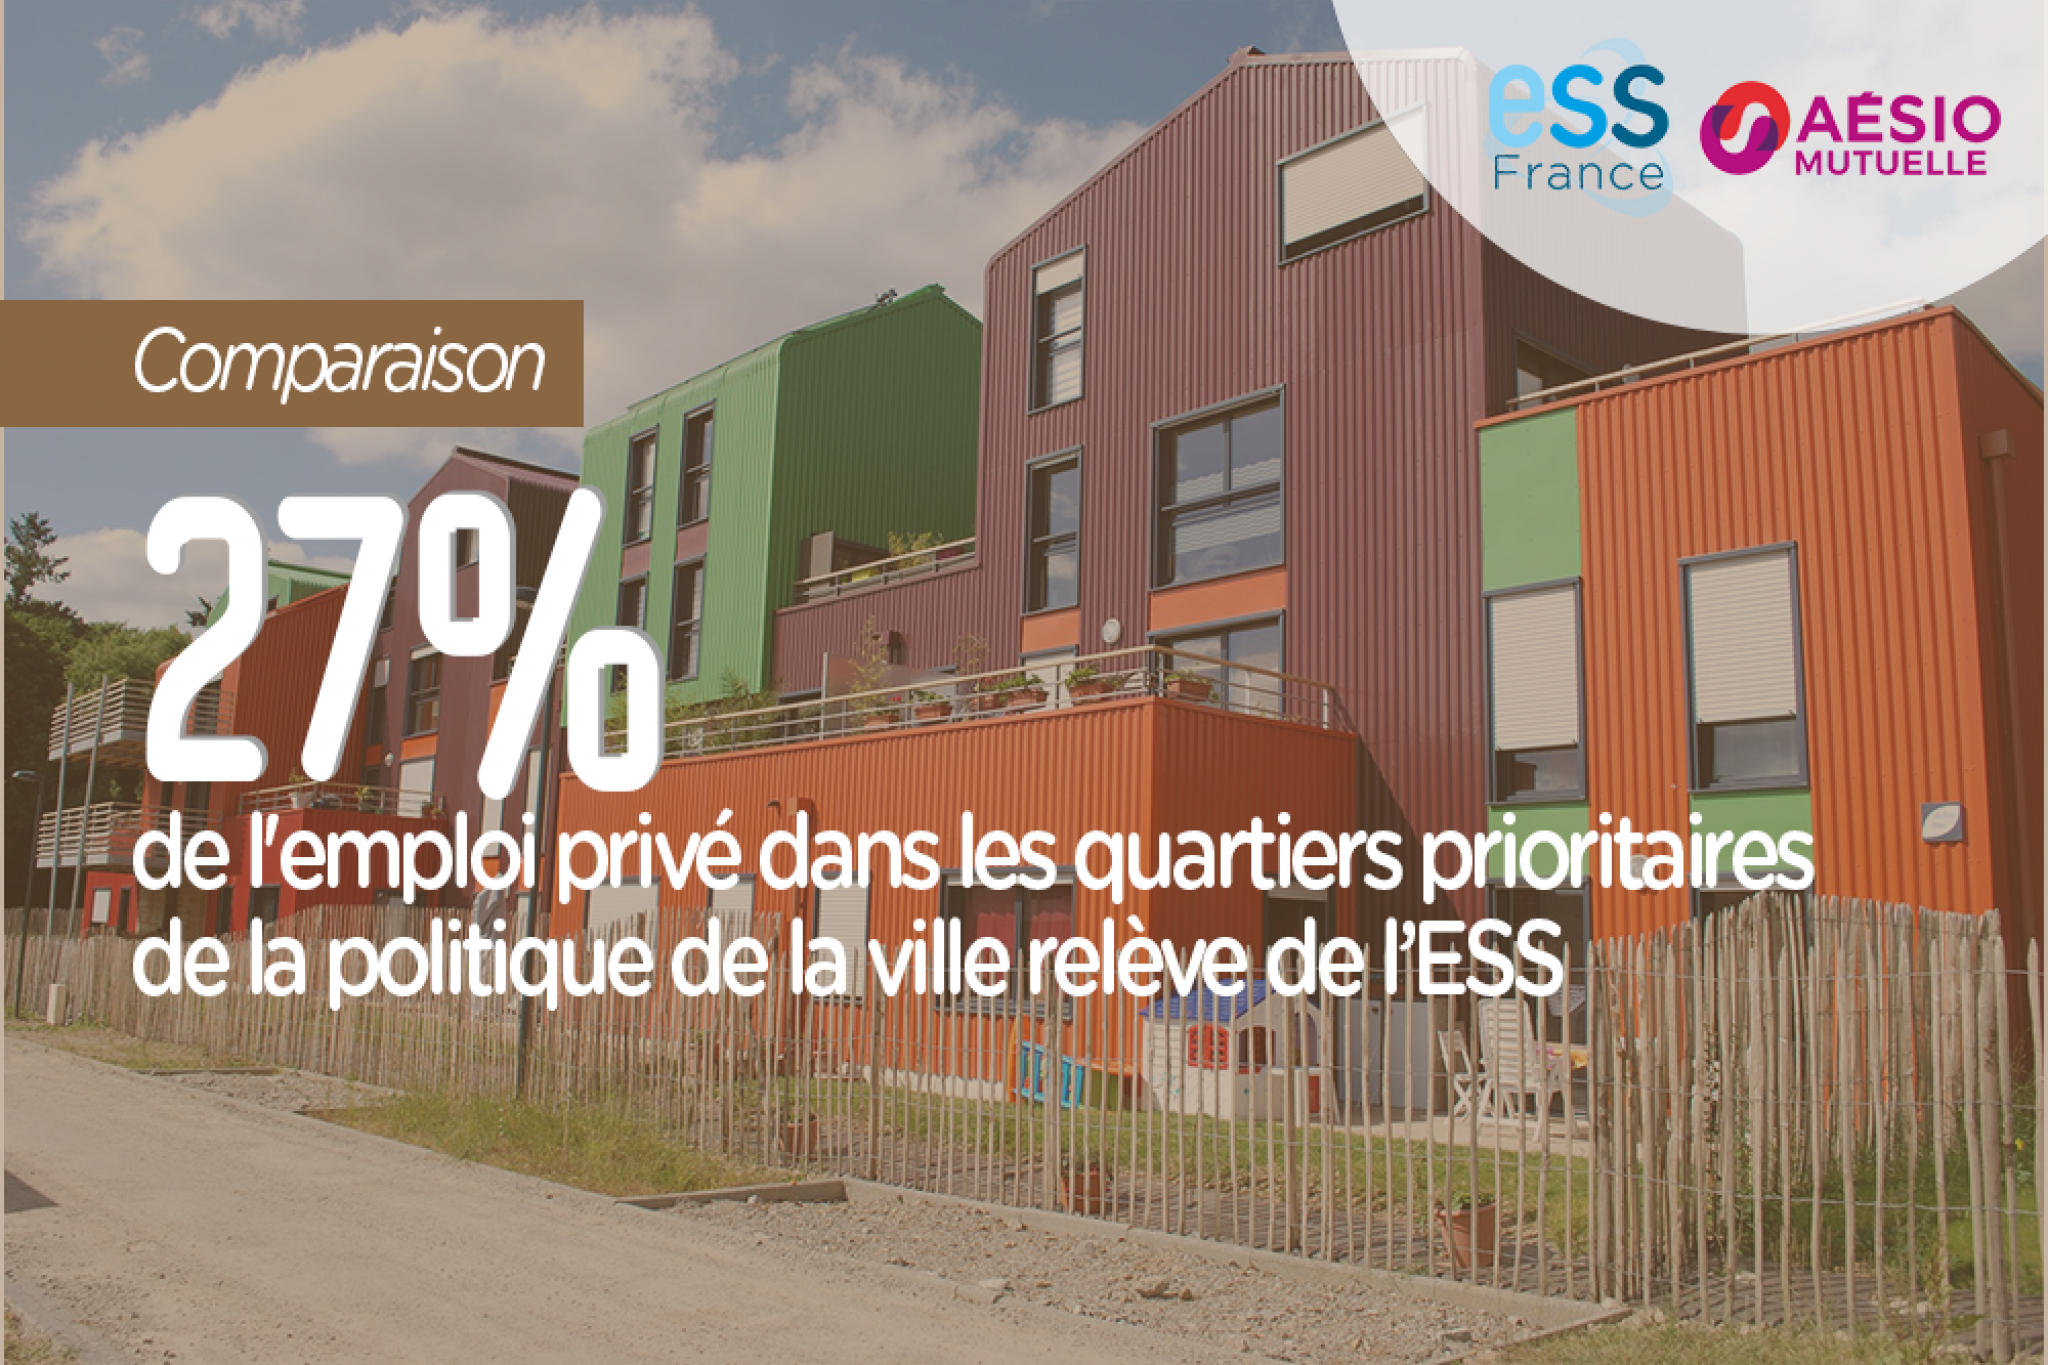 27% de l'emploi privé dans les quartiers prioritaires de la politique de la ville relève de l'ESS